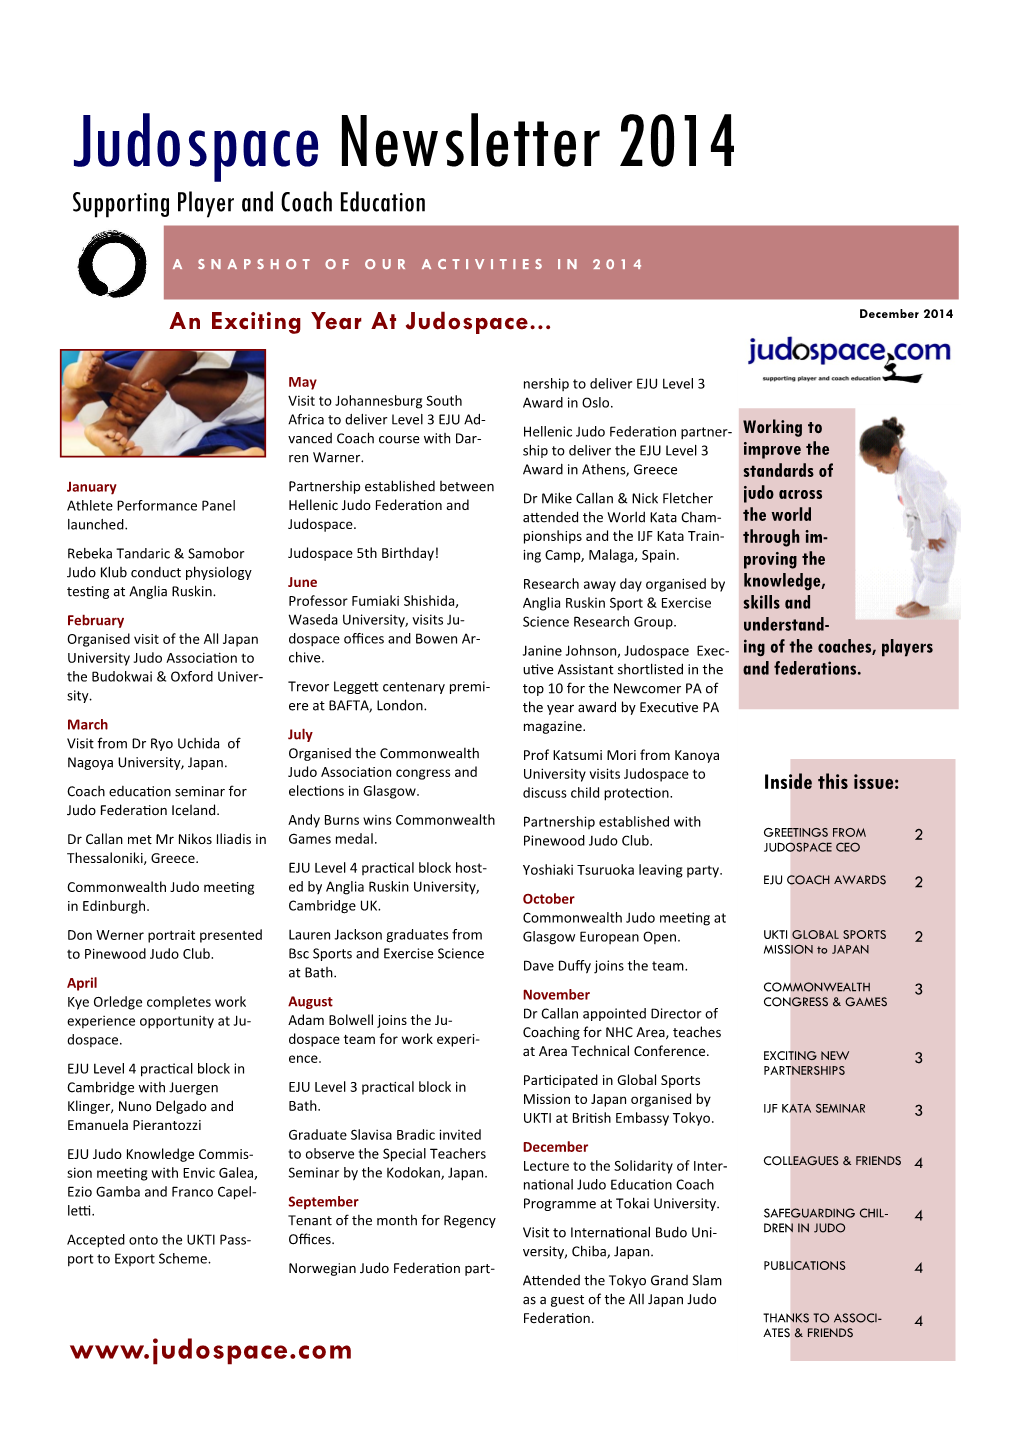 Judospacenewsletter 2014